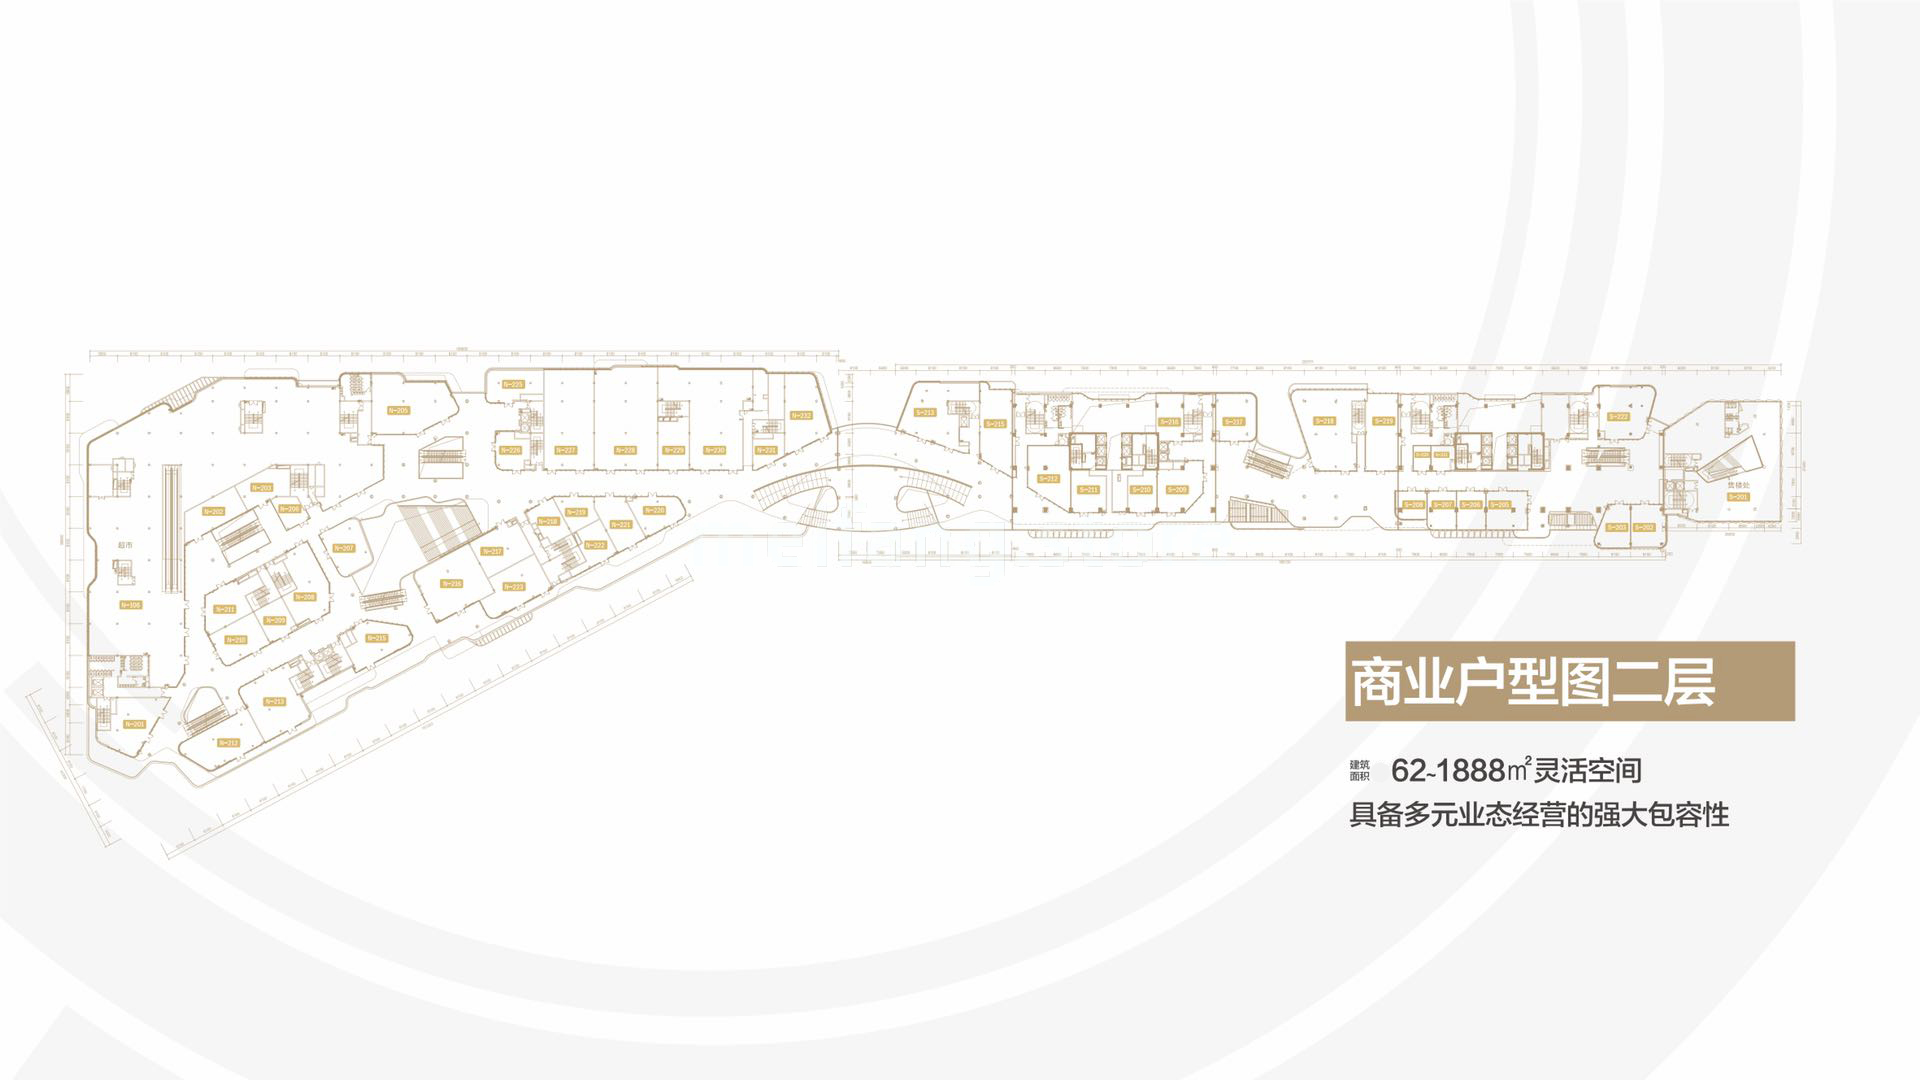 雅居乐中心 独立商业 二层平面图 建面62-1888㎡